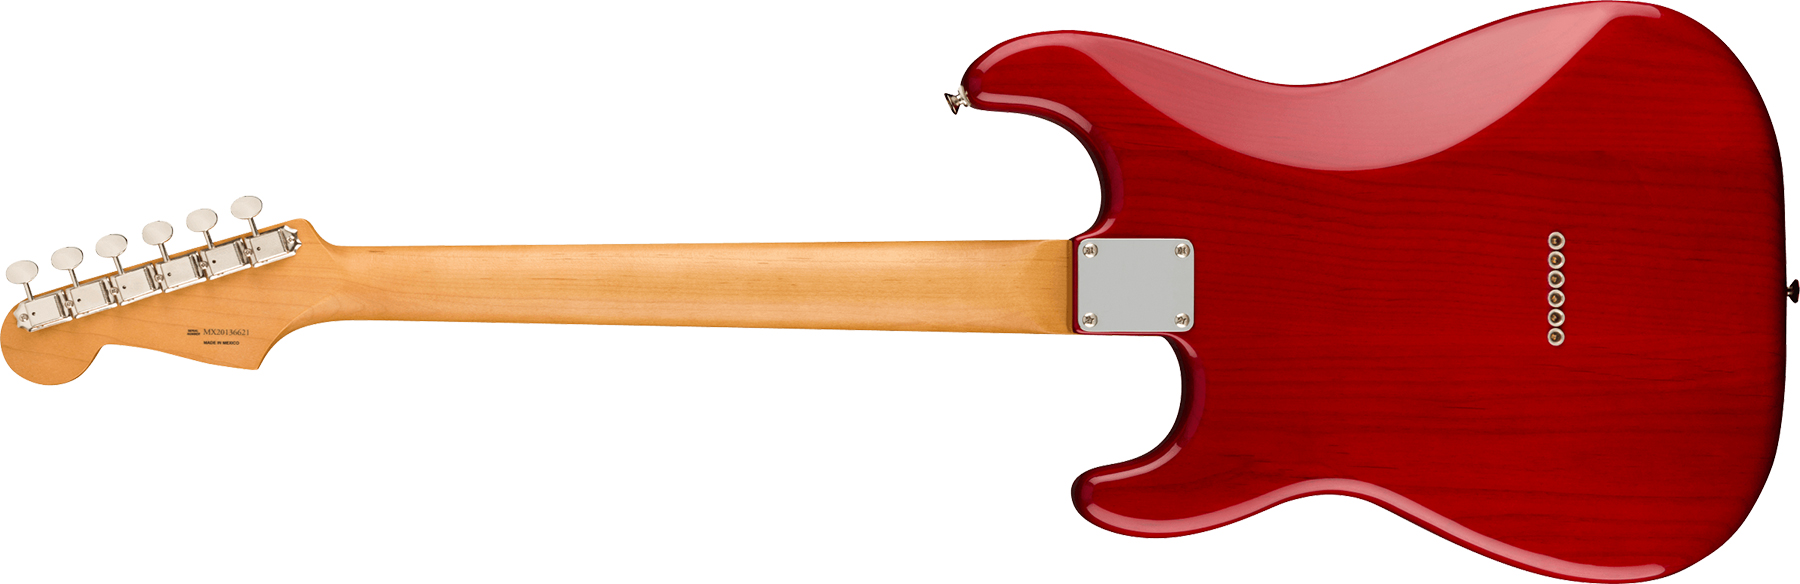 Fender Strat Noventa Mex Ss Ht Pf +housse - Crimson Red Transparent - Elektrische gitaar in Str-vorm - Variation 1